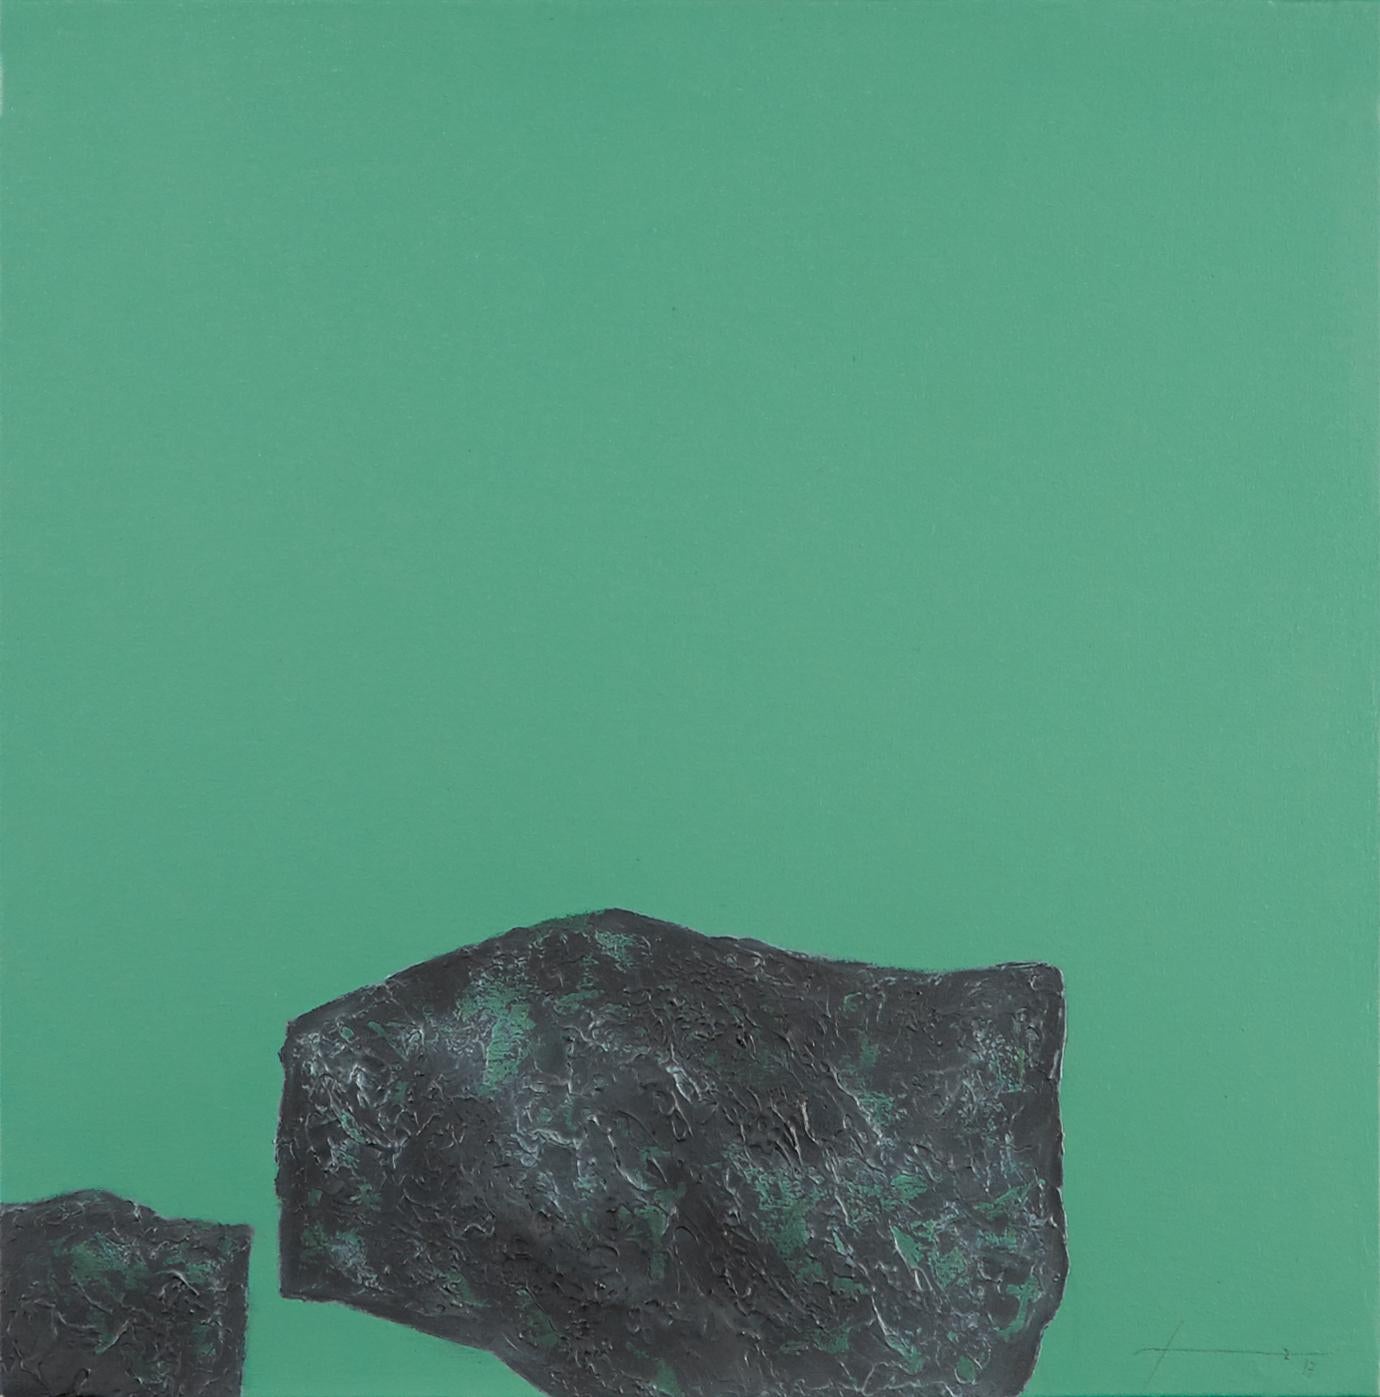 Stones XXIV - XXIe siècle, contemporain, peinture abstraite, techniques mixtes